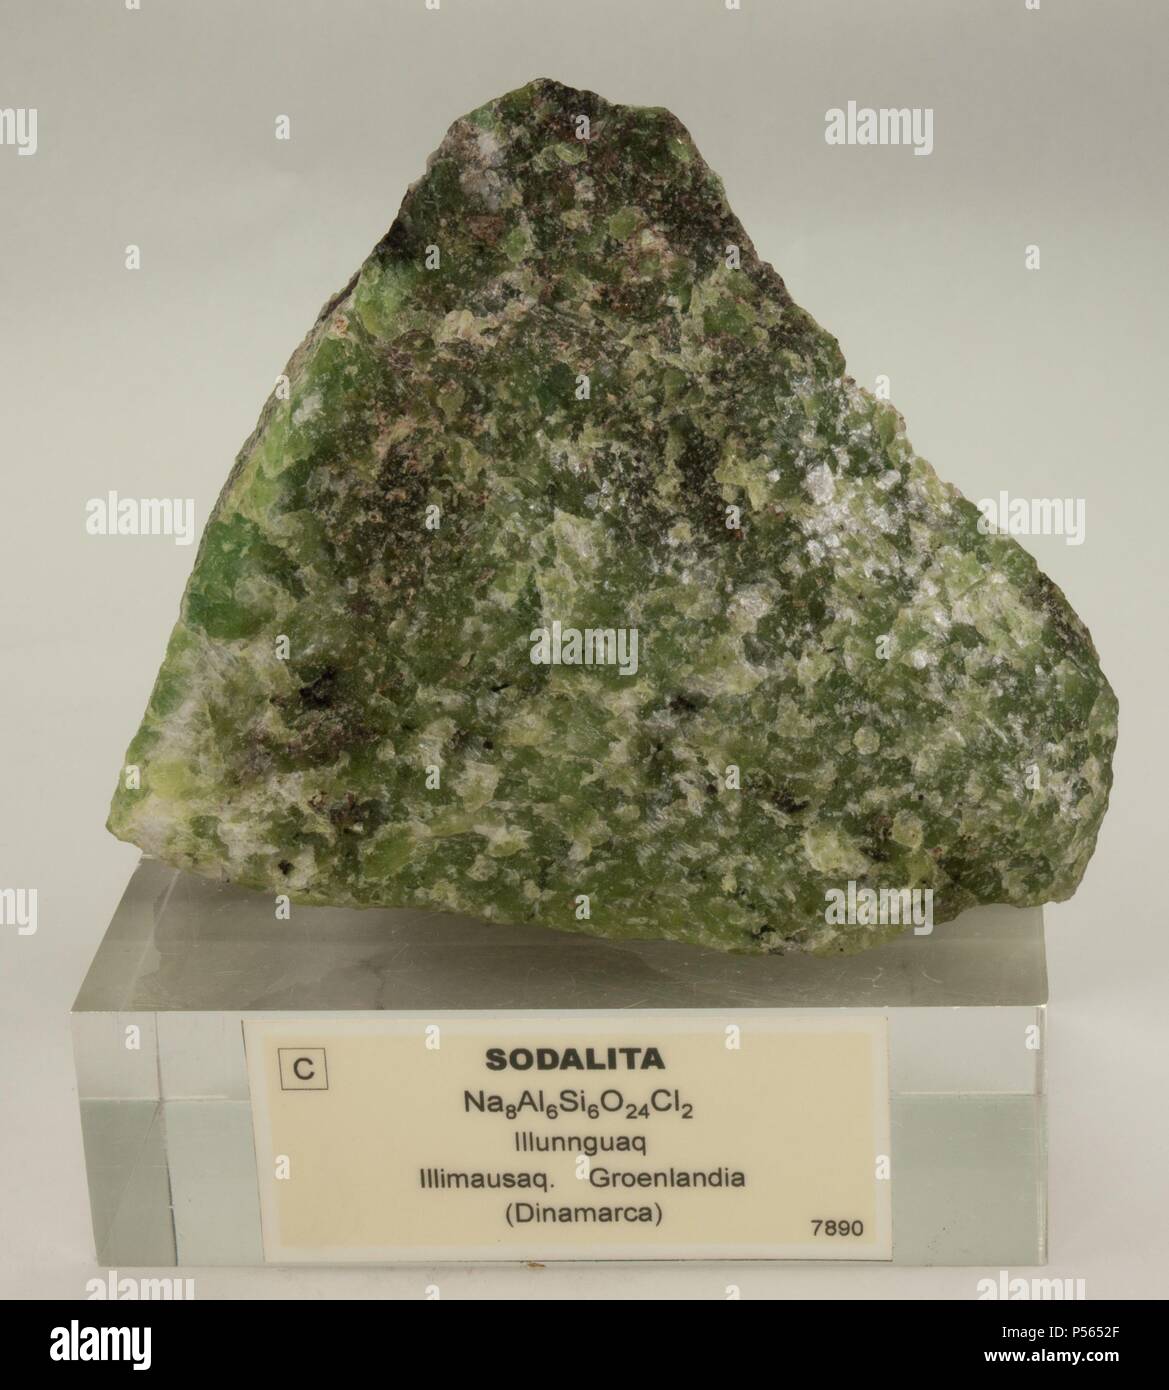 SODALITA. Mineral del grupo VII (silicatos). Ejemplar procedente de Groenlandia. Stock Photo